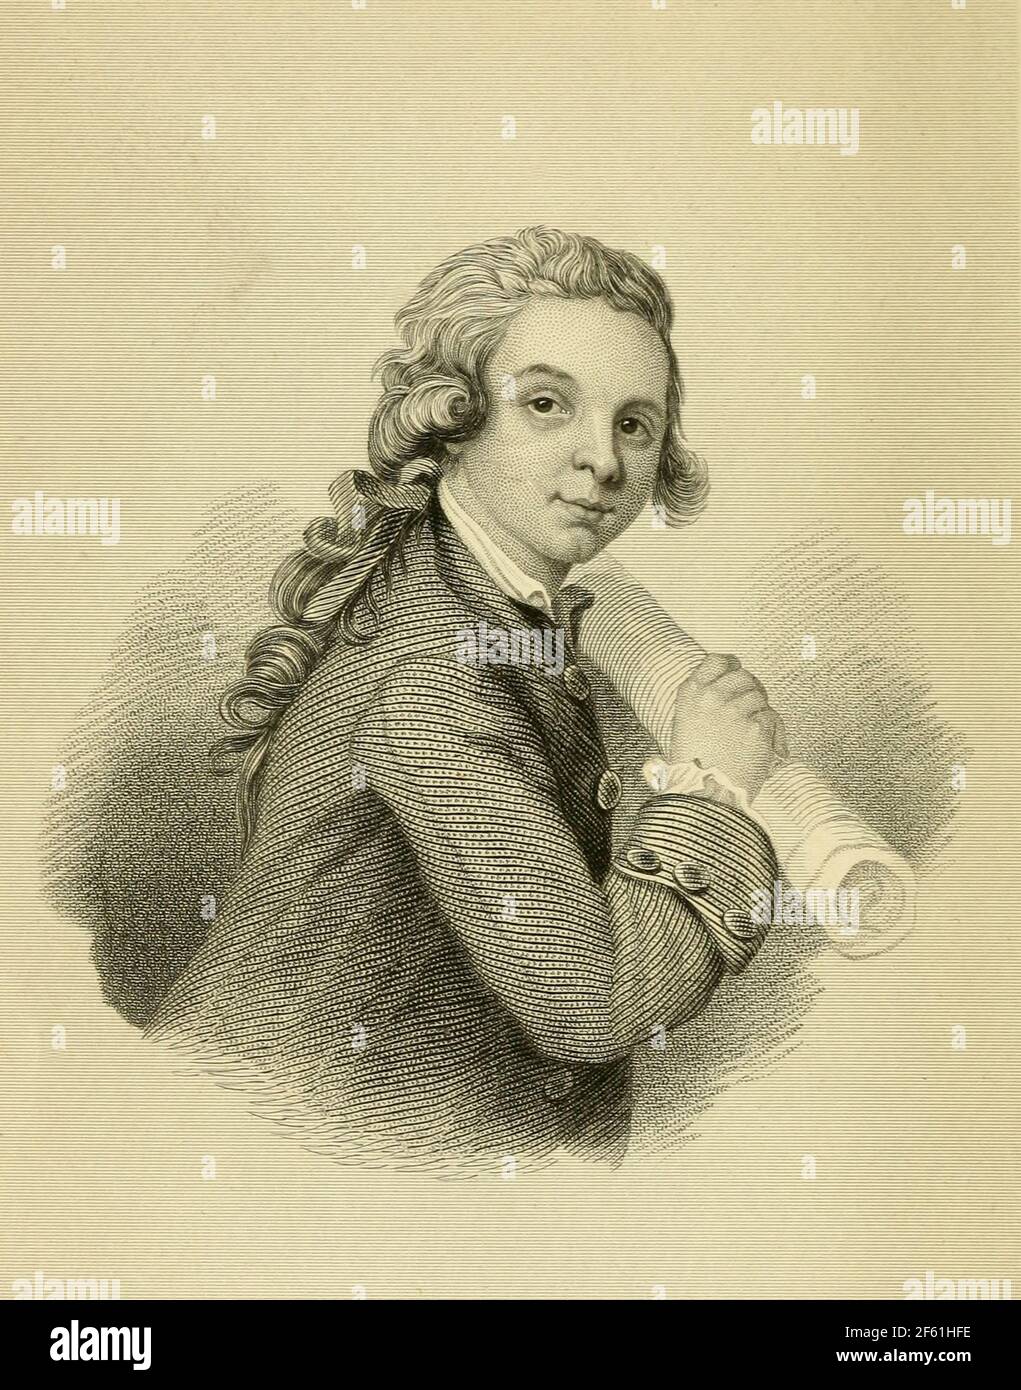 Jeune Wolfgang Amadeus Mozart, compositeur autrichien Banque D'Images